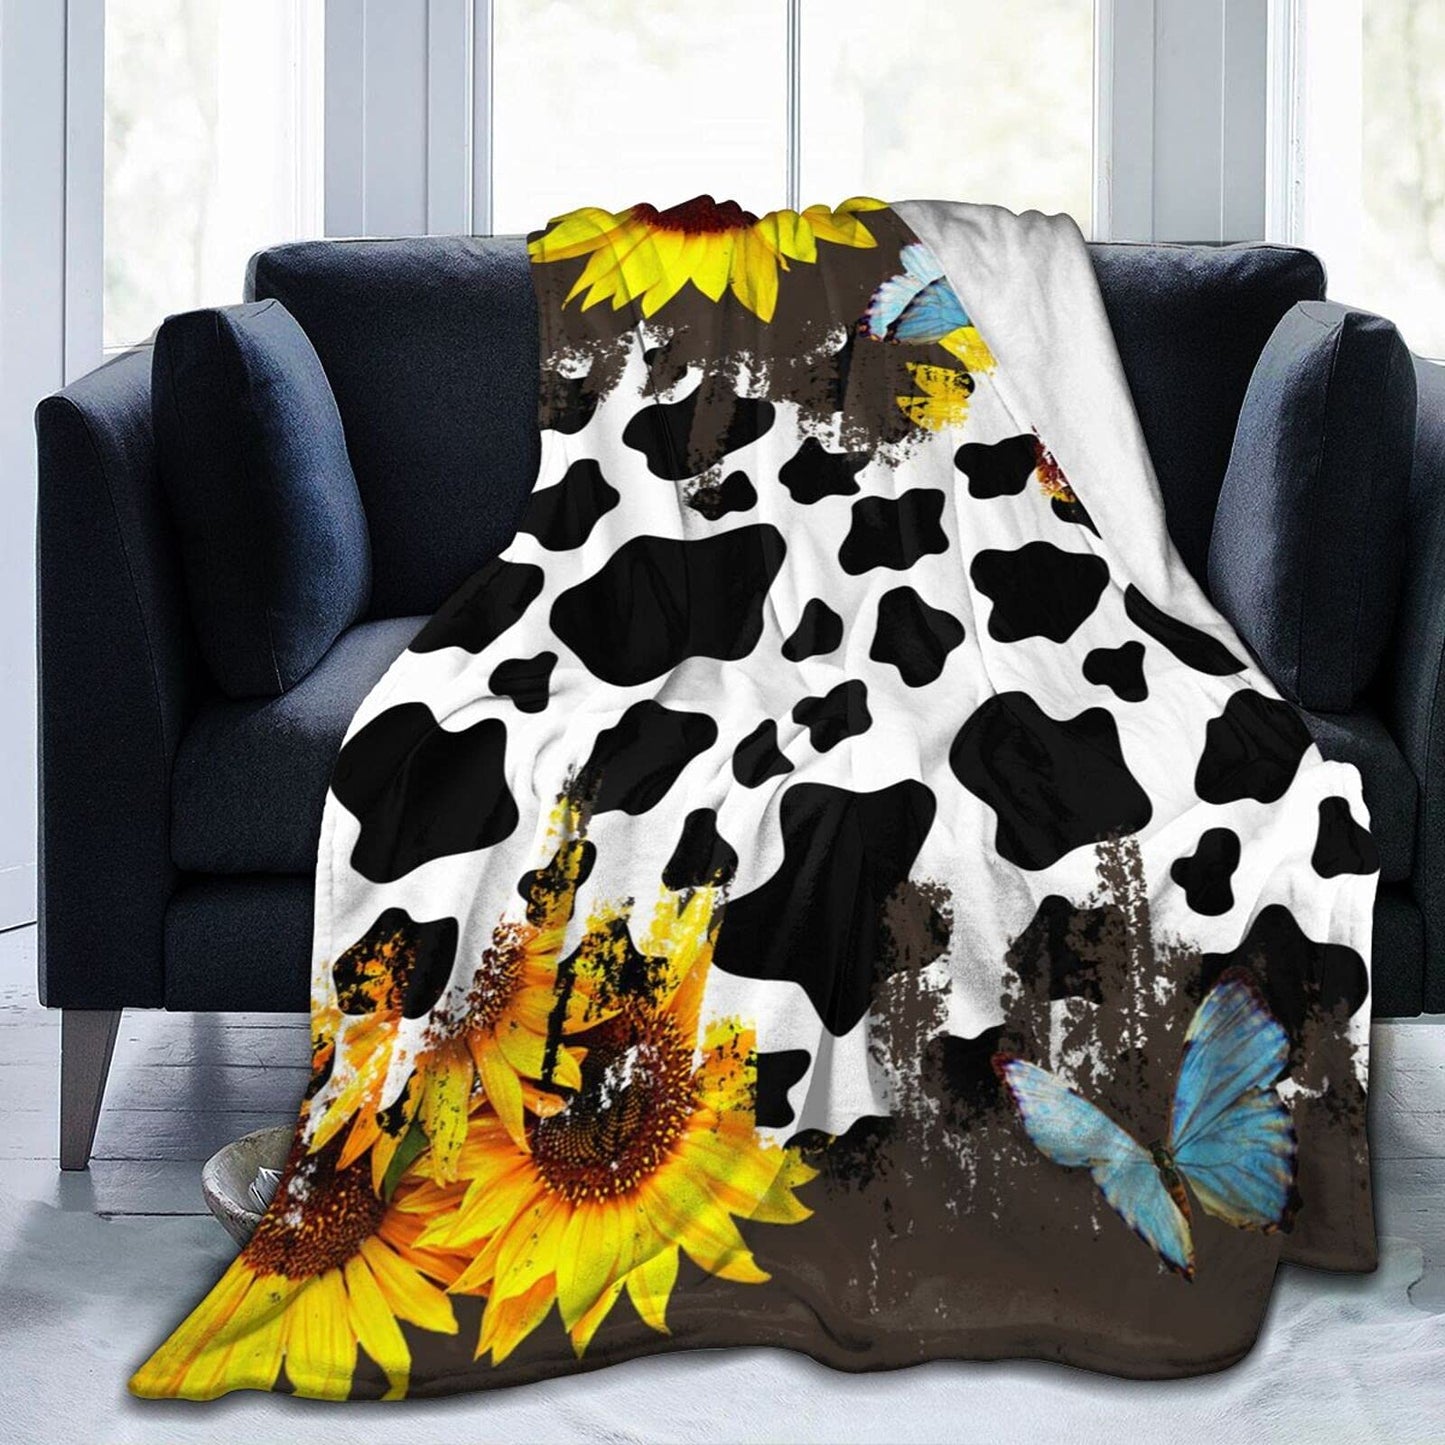 Cow Print Blanket